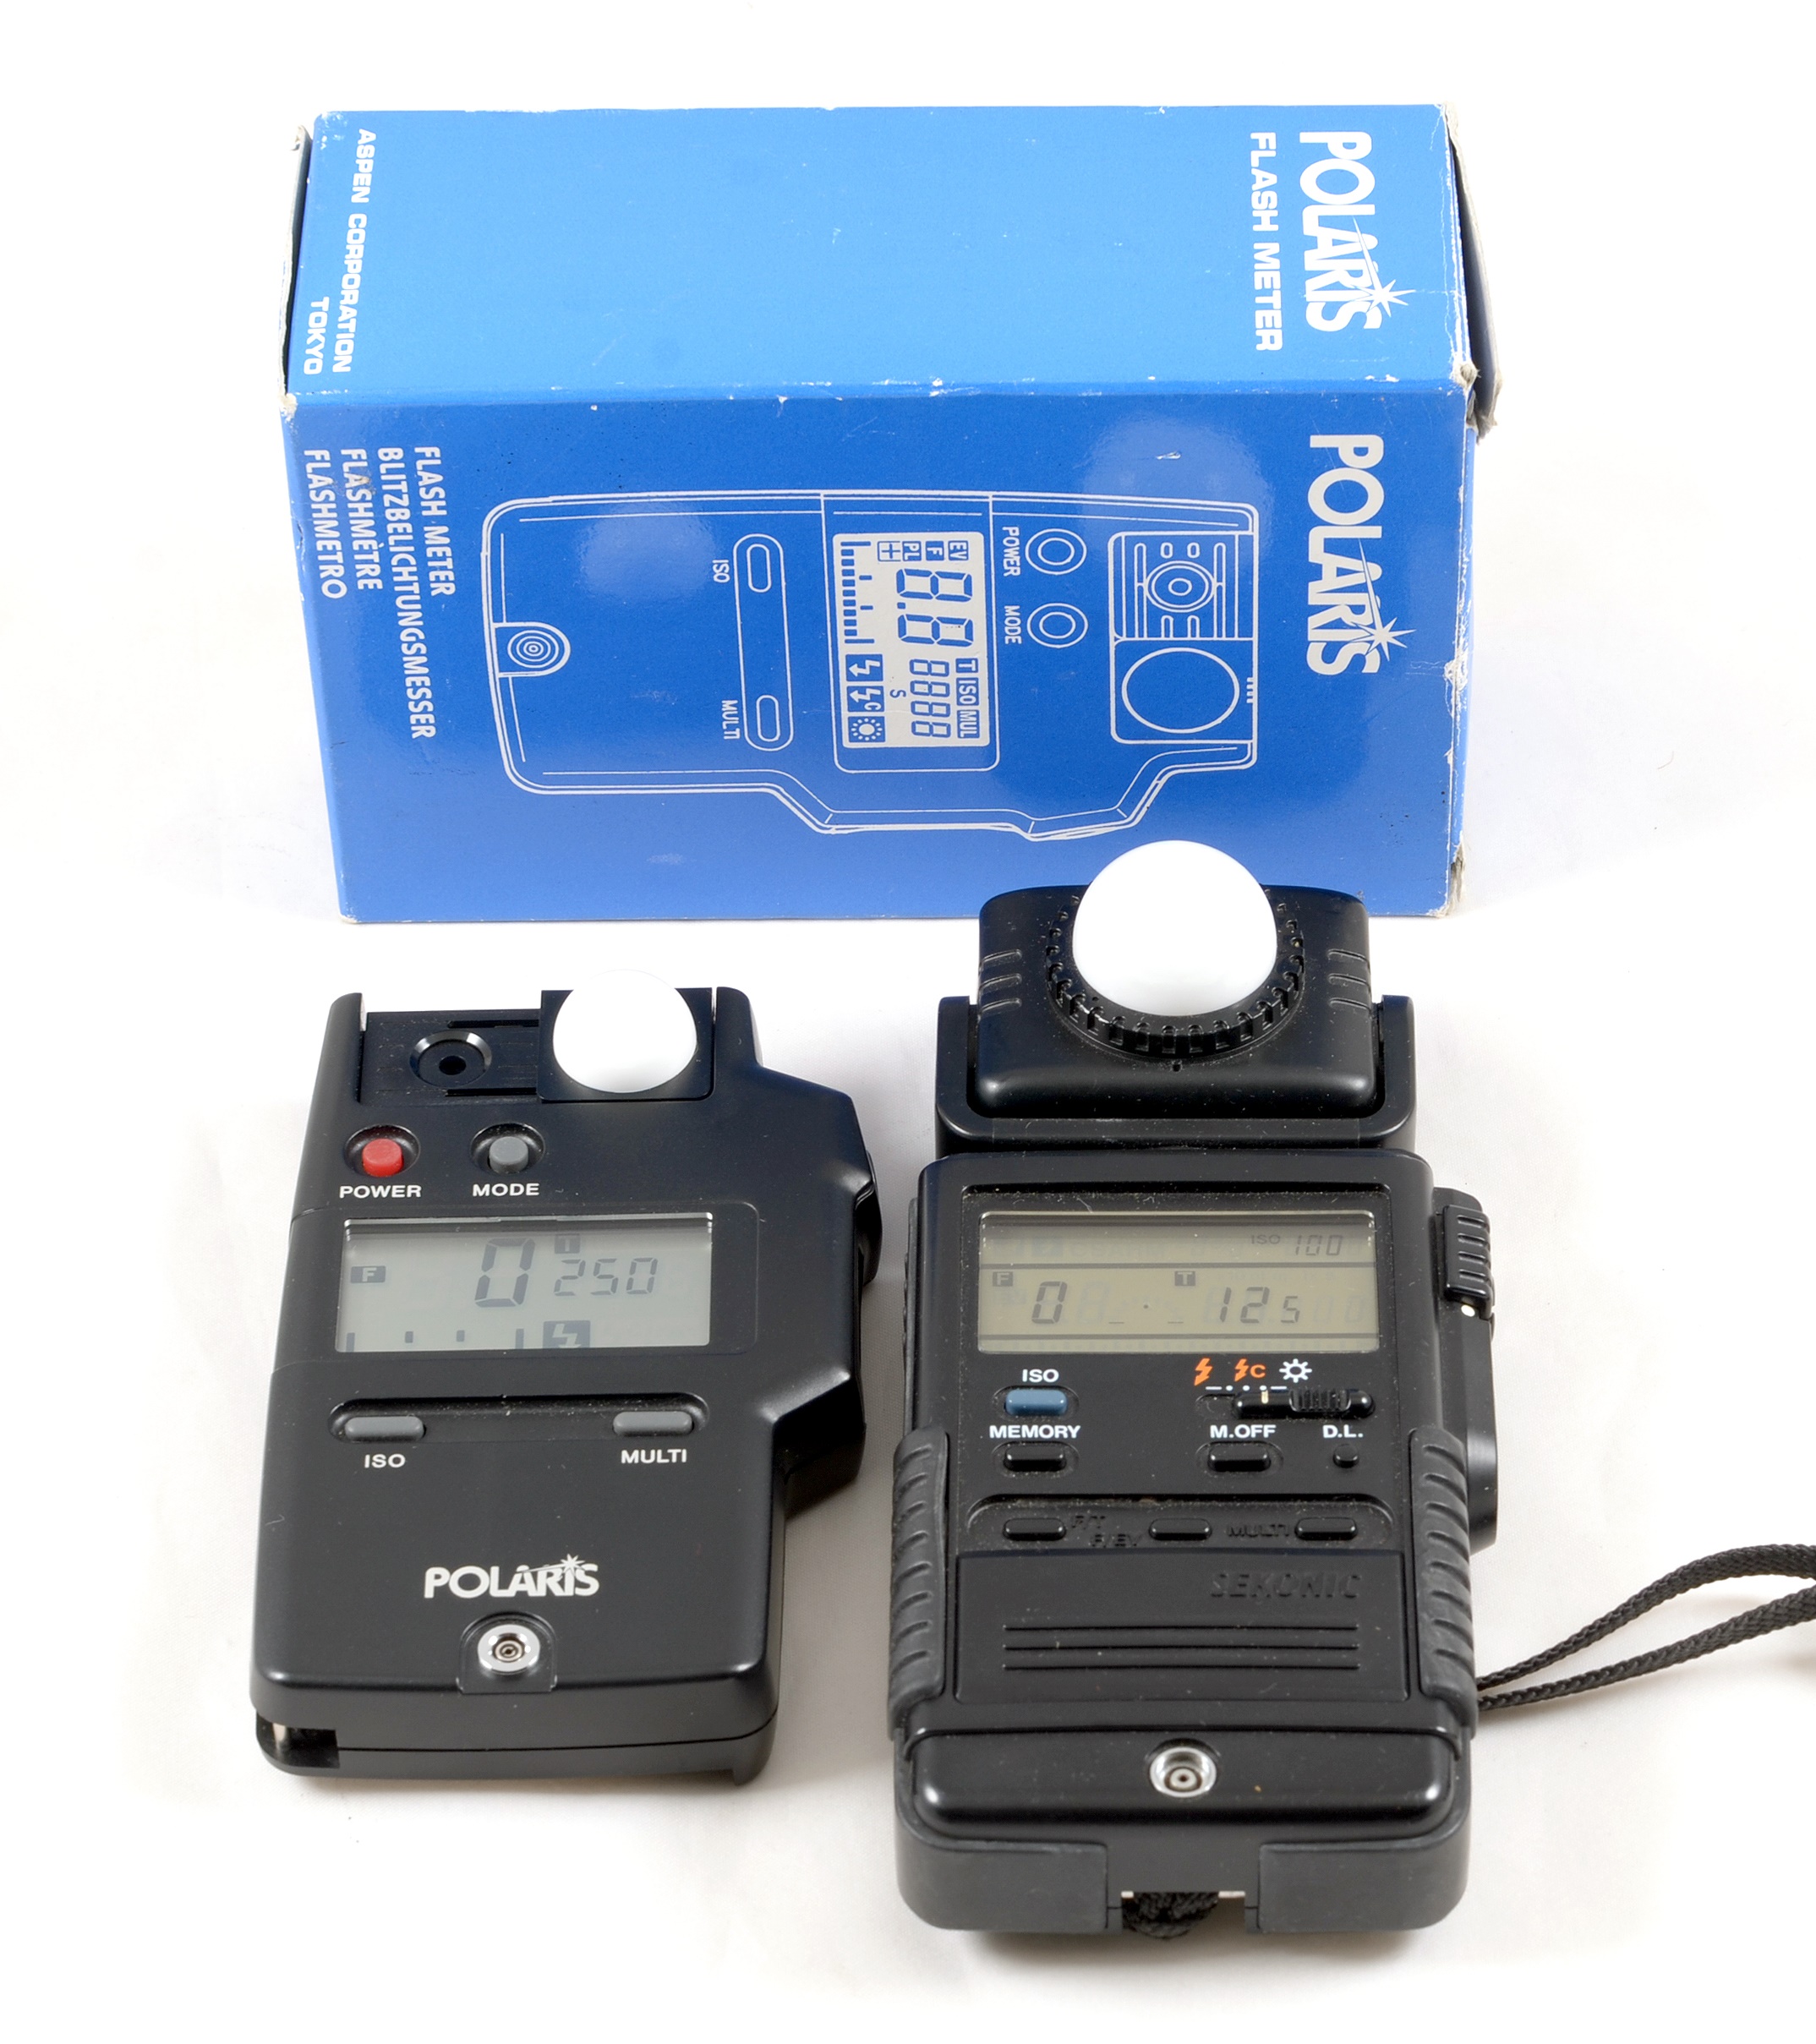 Sekonic & Polaris Digital Flash Meters.